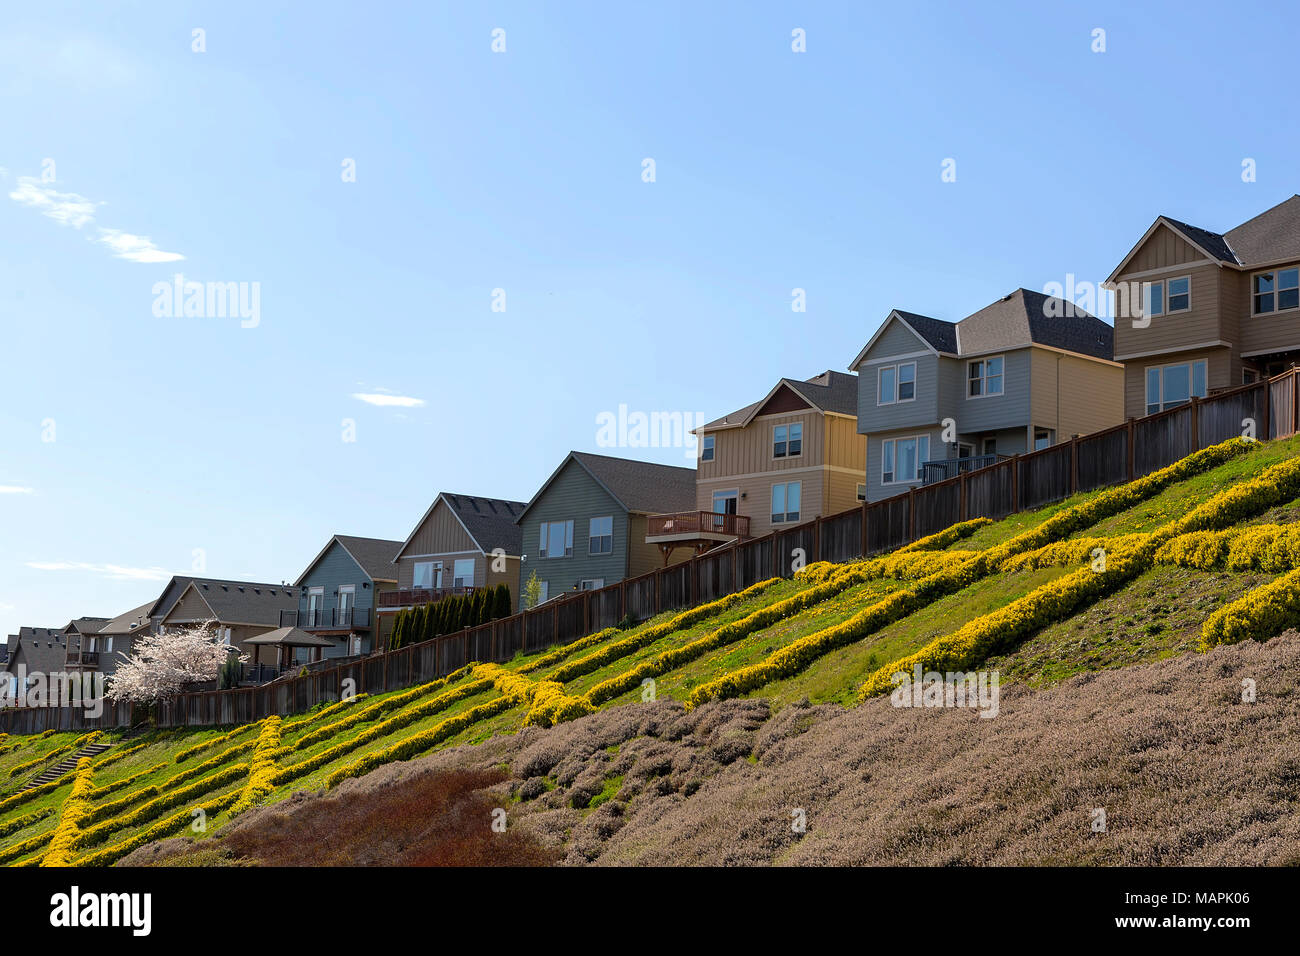 Maisons à flanc de banlieue en Amérique du Nord avec vue sur la terrasse en bois d'arrière-cour Banque D'Images